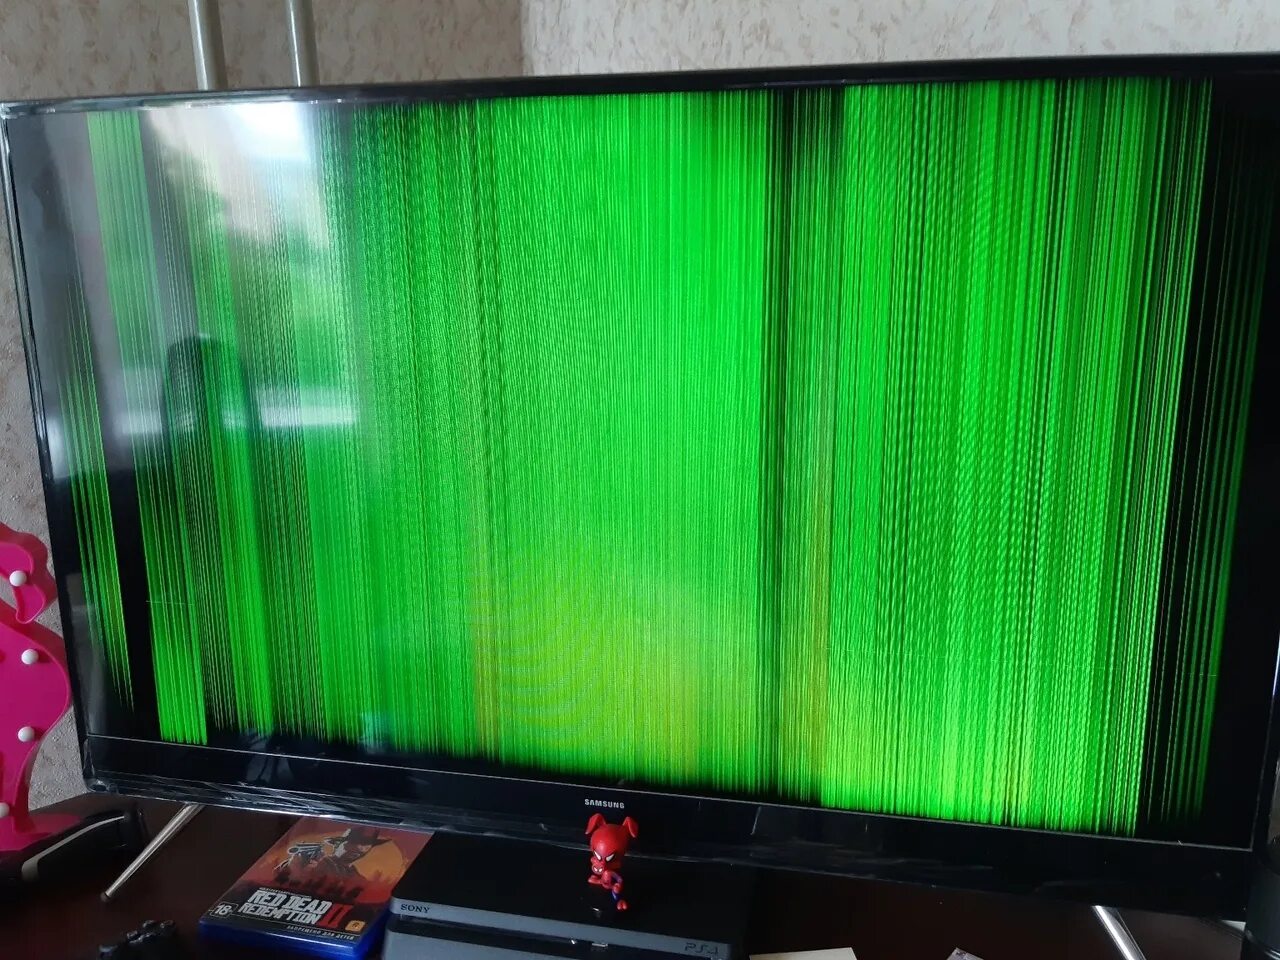 Телевизор загорелся зеленый. KDL 52hx900. Телевизор DNS 39" вертикальные полосы. LG 32cs560. KDL-40v5500 вертикальные полосы.